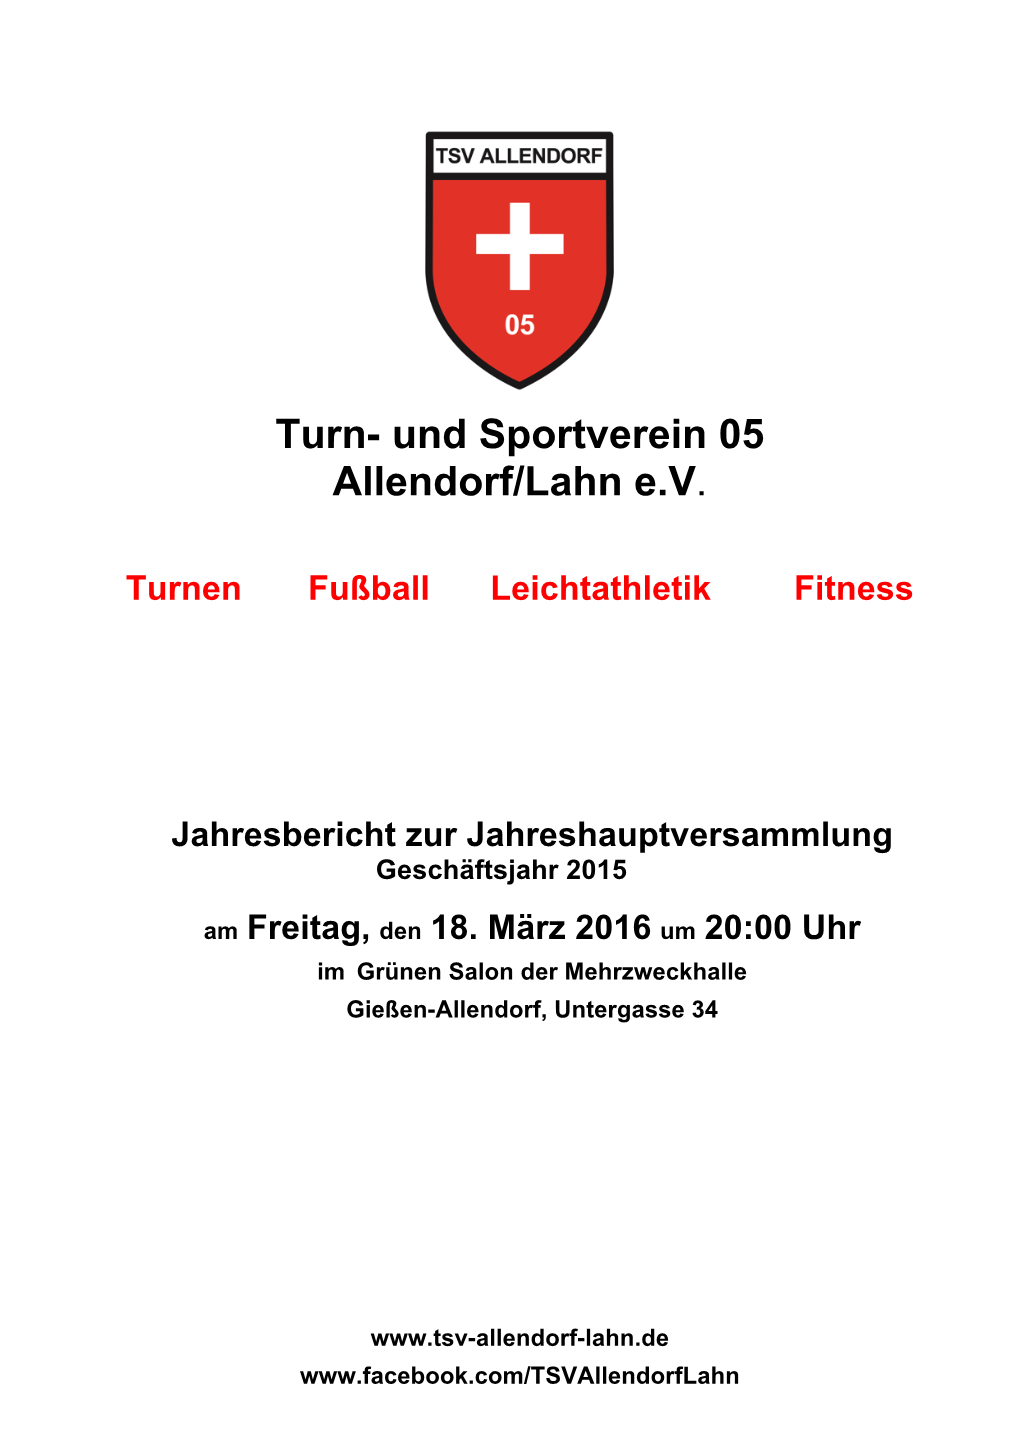 Turn- Und Sportverein 05 Allendorf/Lahn E.V